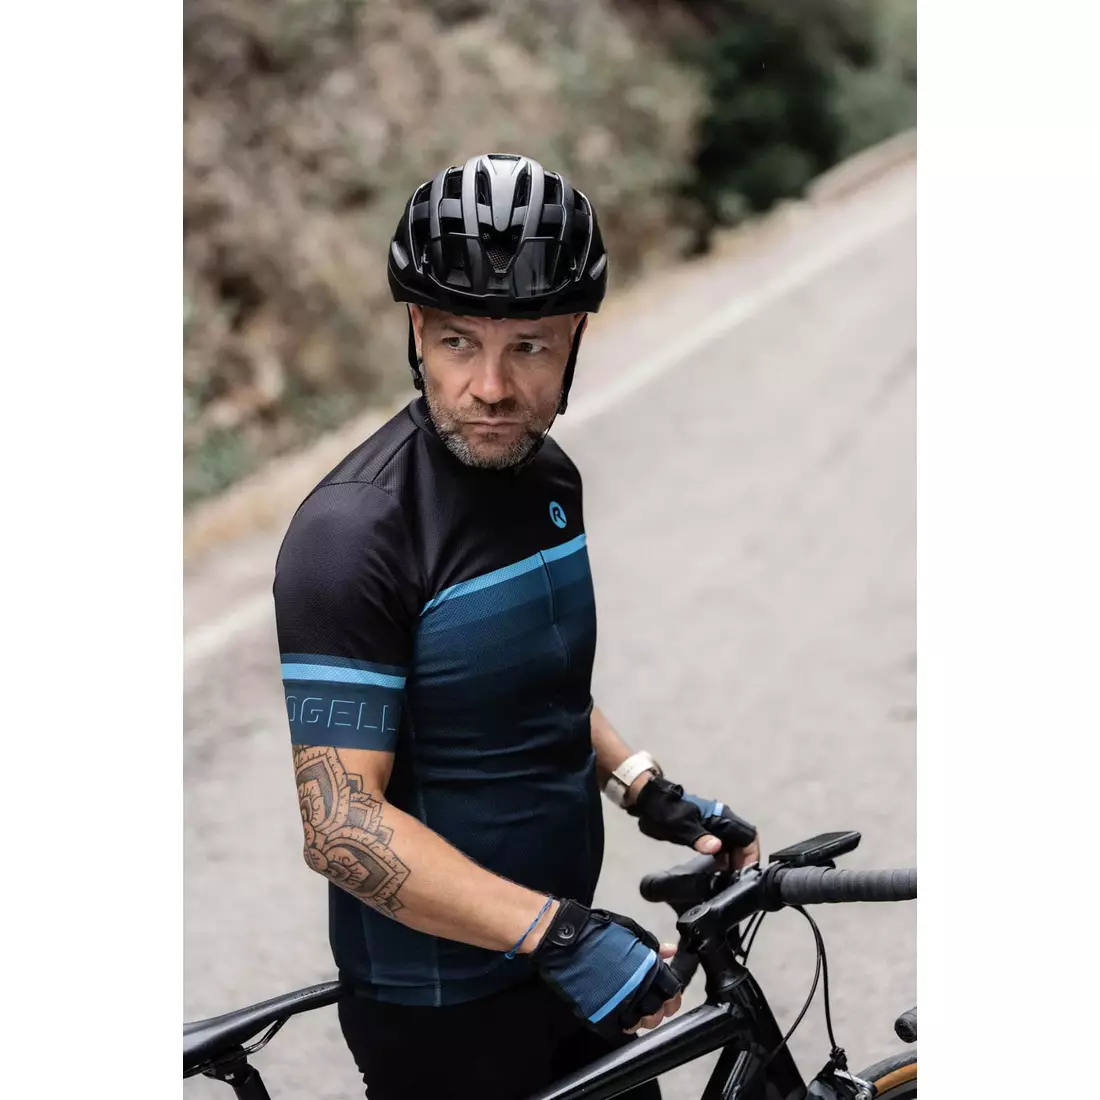 Rogelli HERO II tricou de ciclism pentru bărbați, negru și albastru